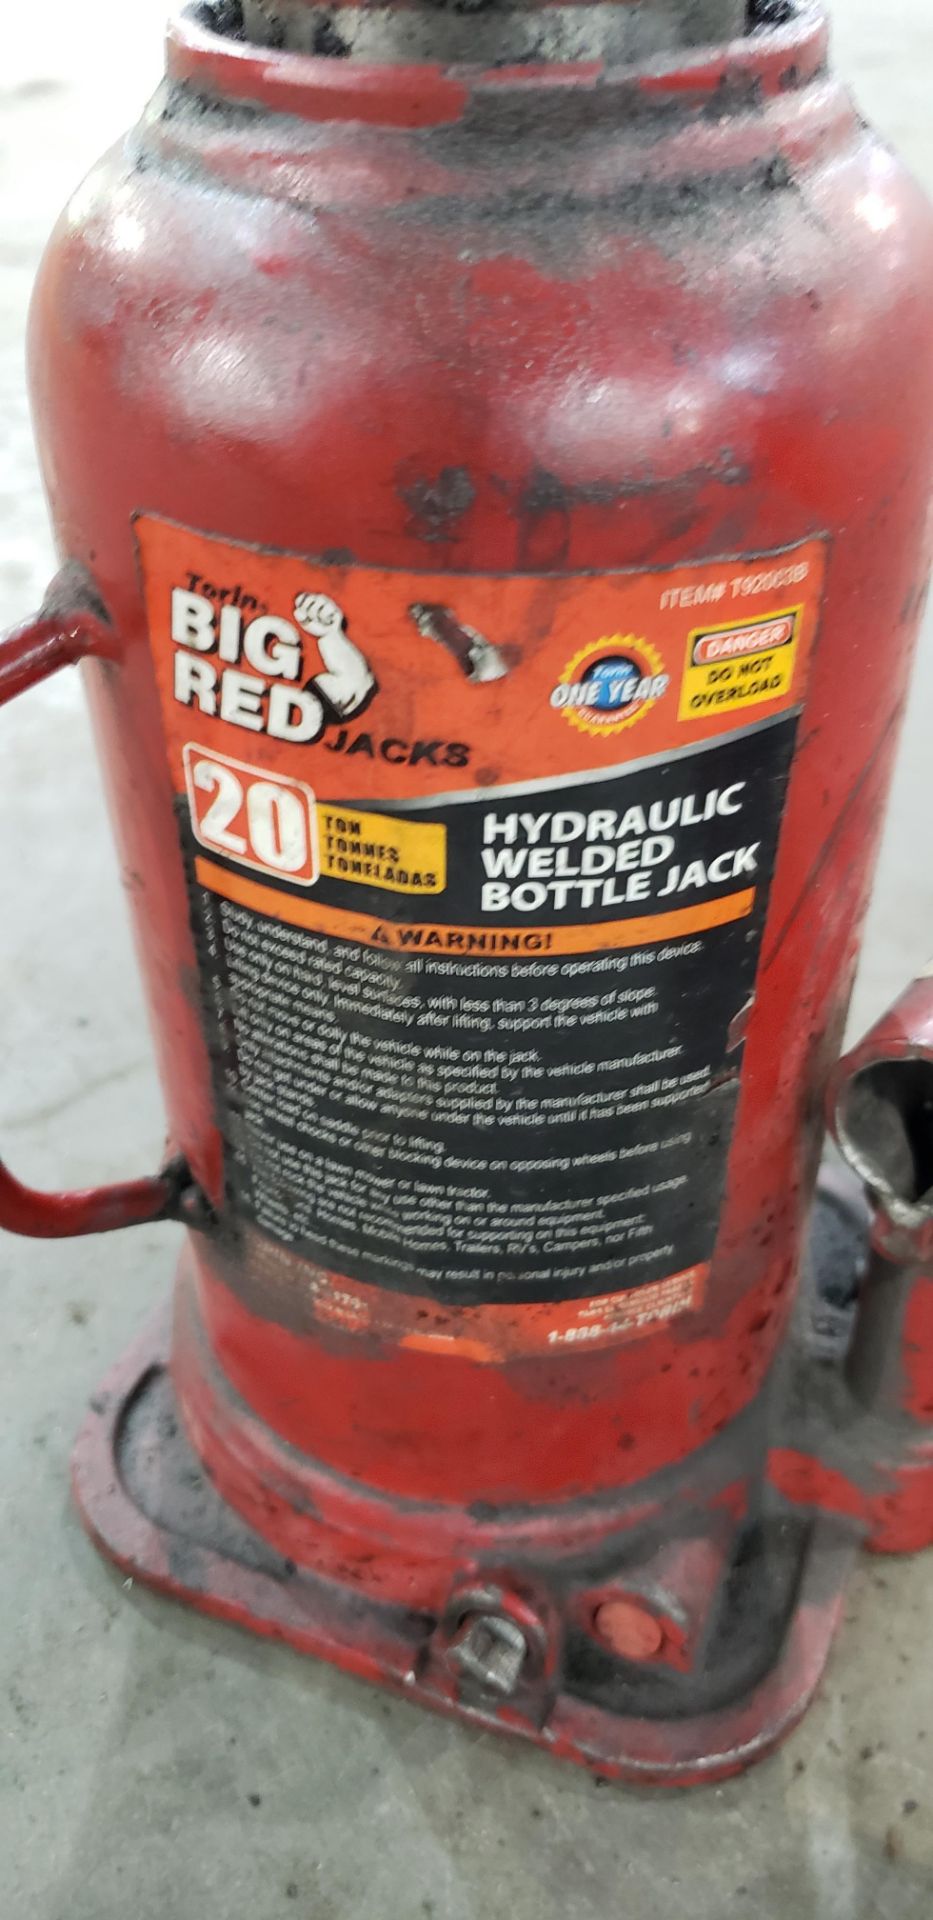 (2) Hydraulic bottle Jacks - Image 2 of 2